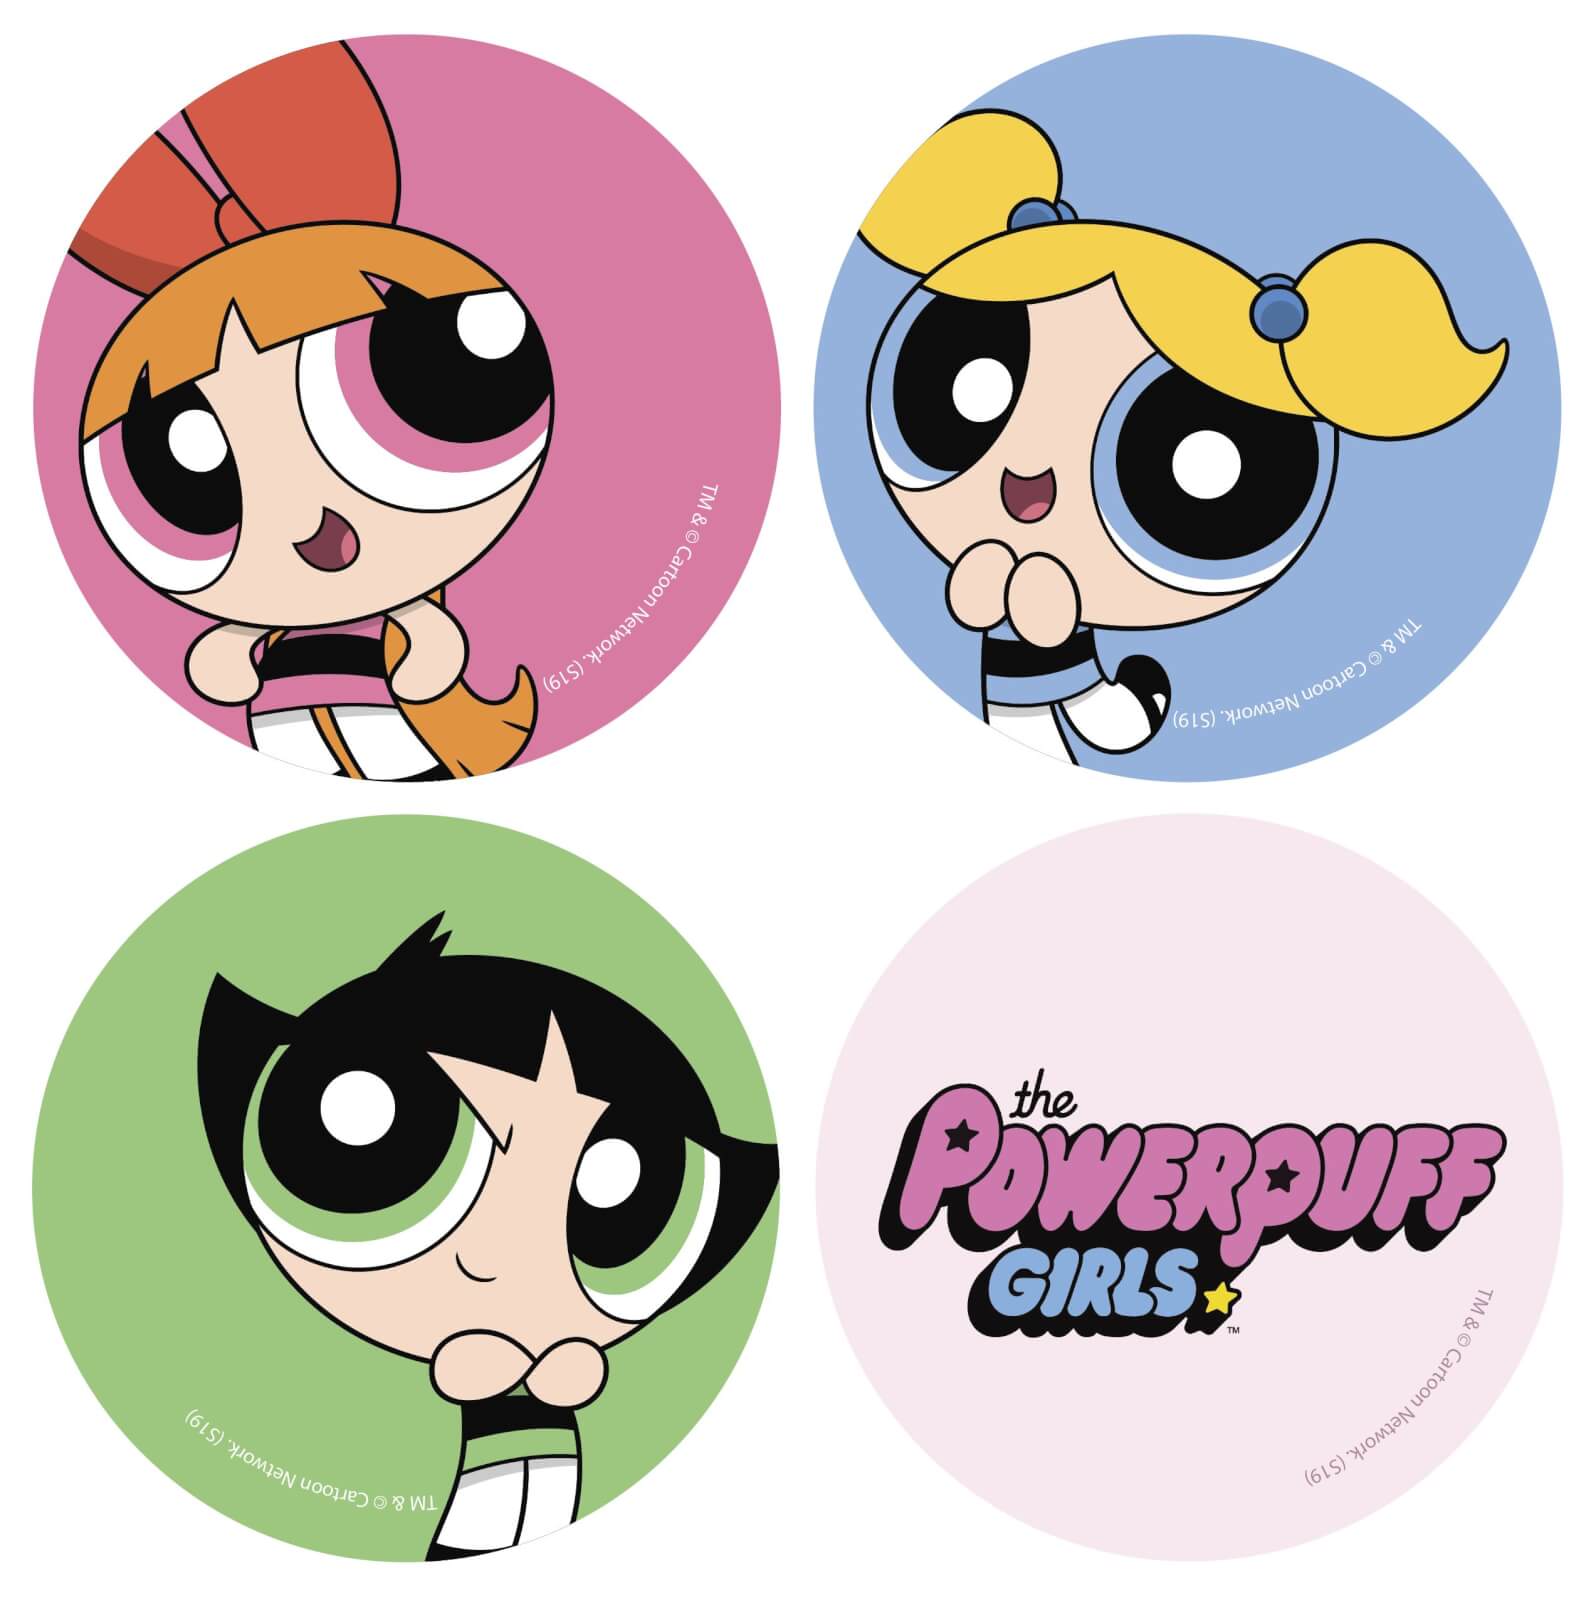 The Powerpuff Girls Character Round Coaster Set